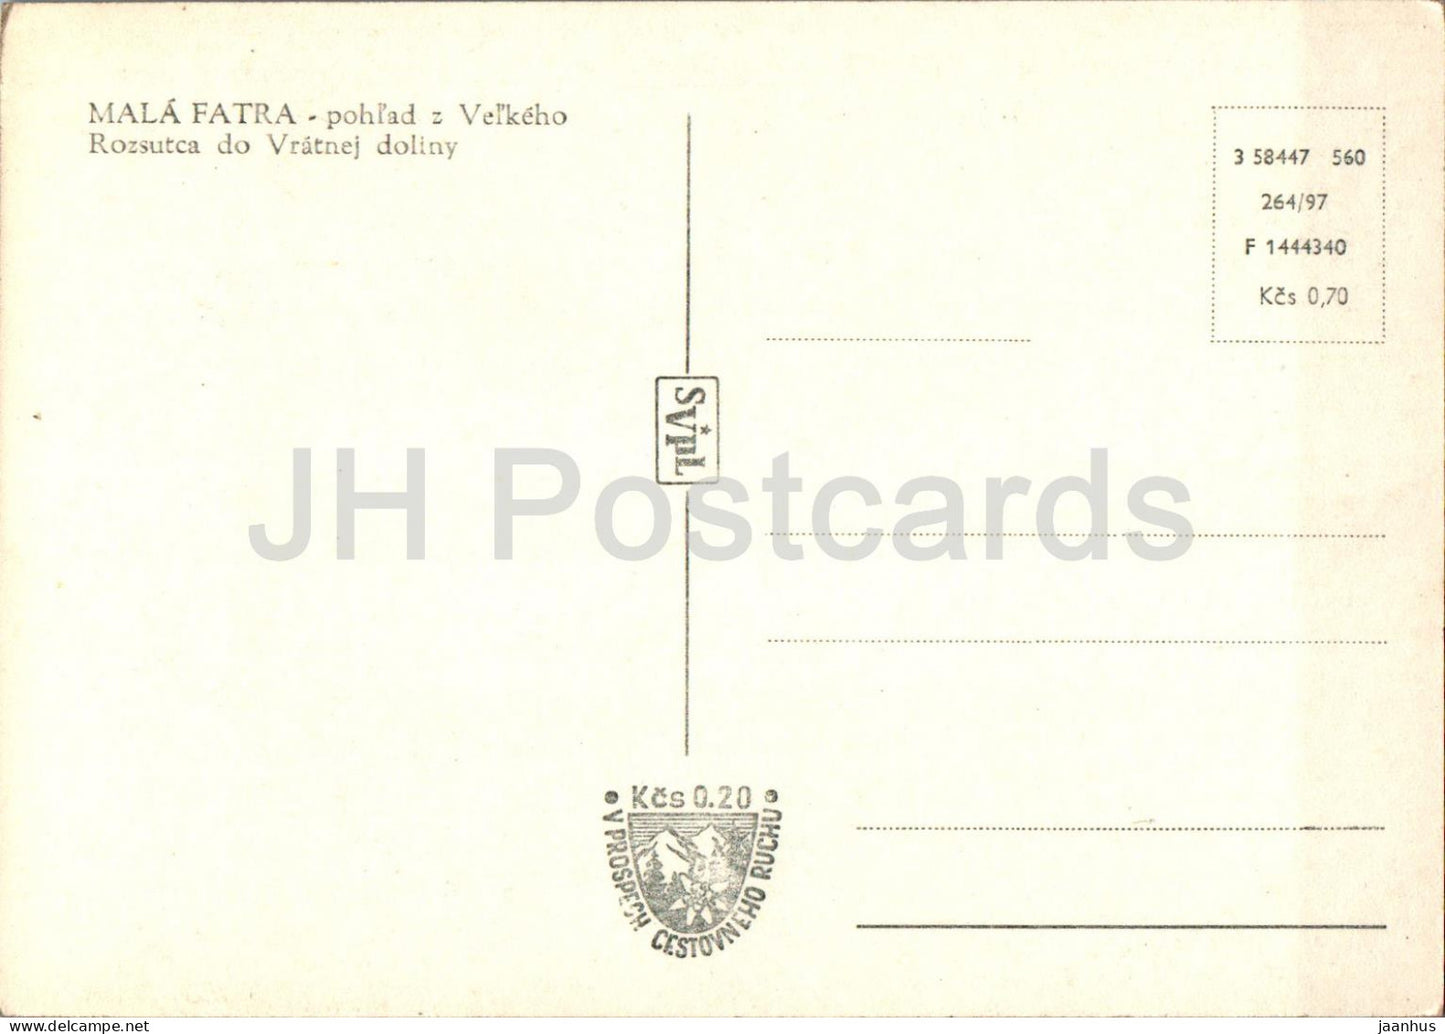 Mala Fatra - pohlad z Velkeho - Rozsutca do Vratnej doliny - Slovakia - Czechoslovakia - unused